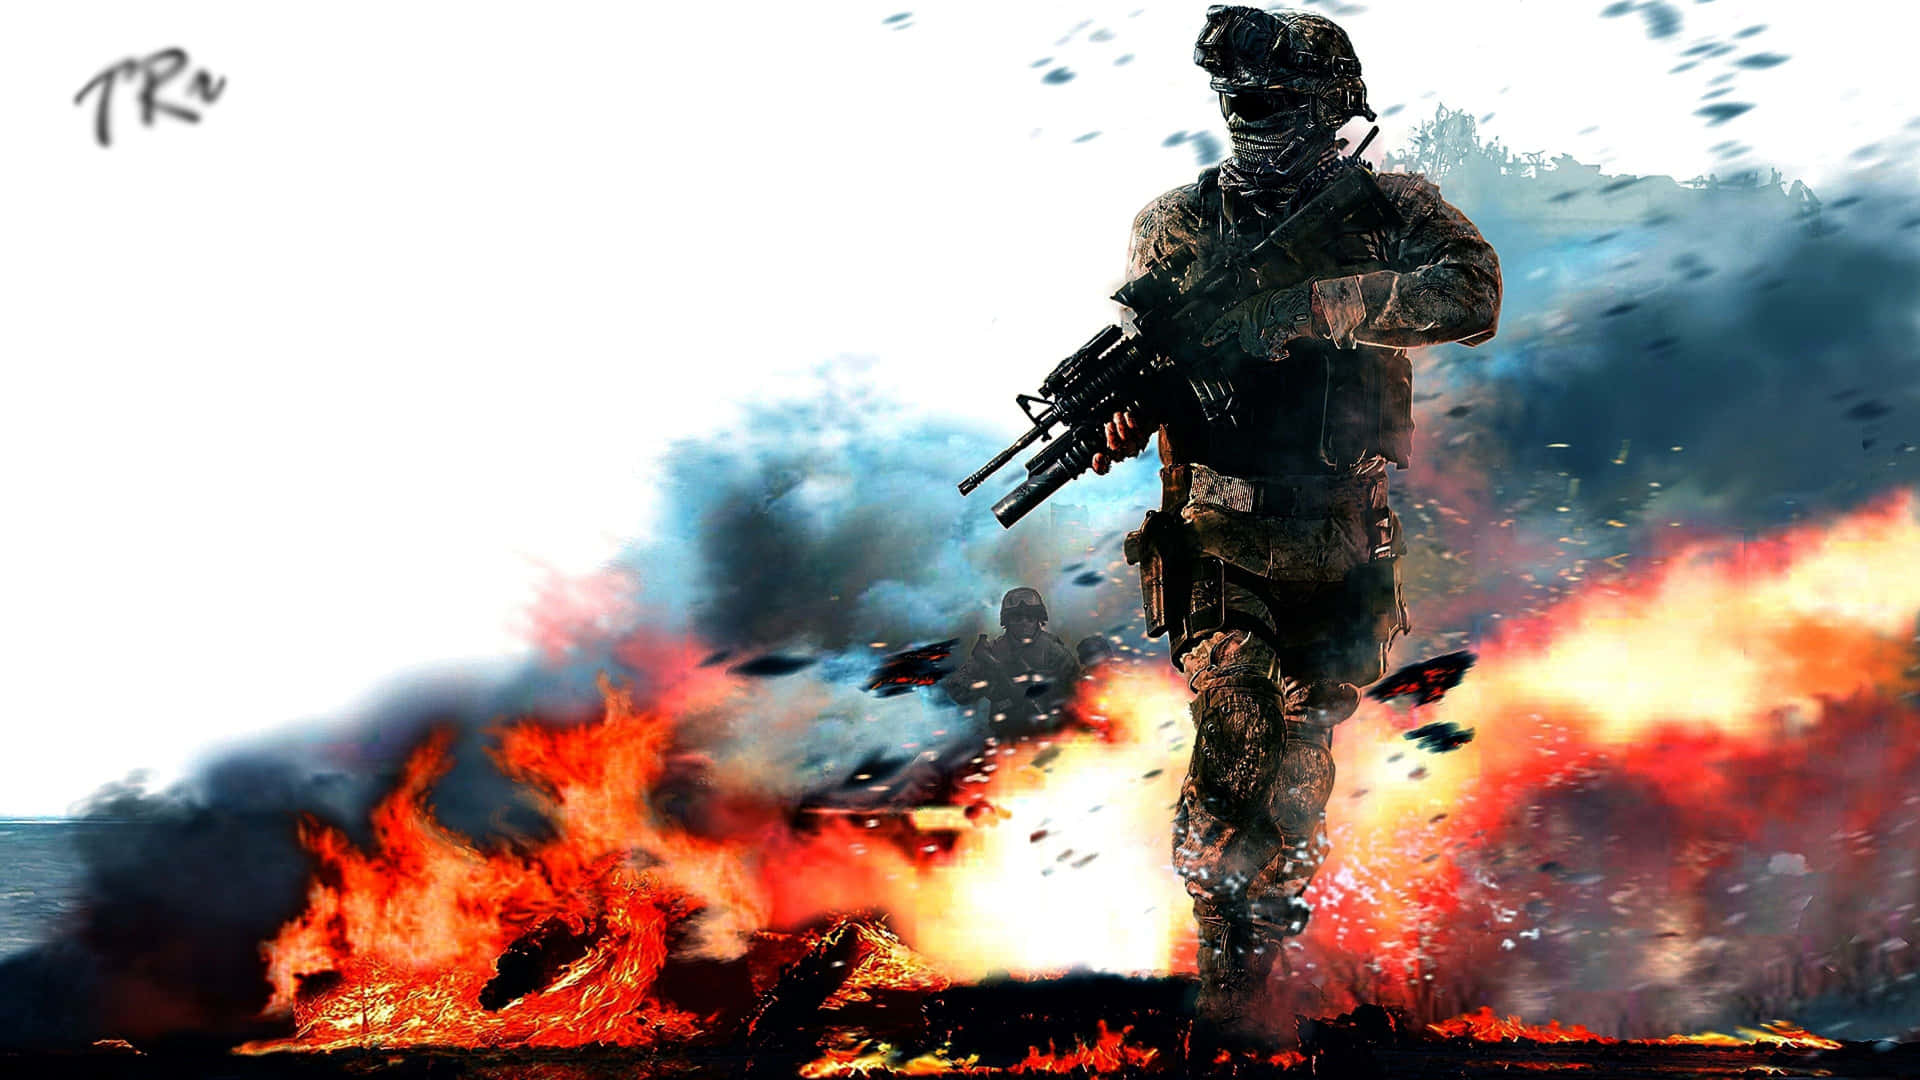 Spielecall Of Duty: Jetzt In Full Hd! Wallpaper